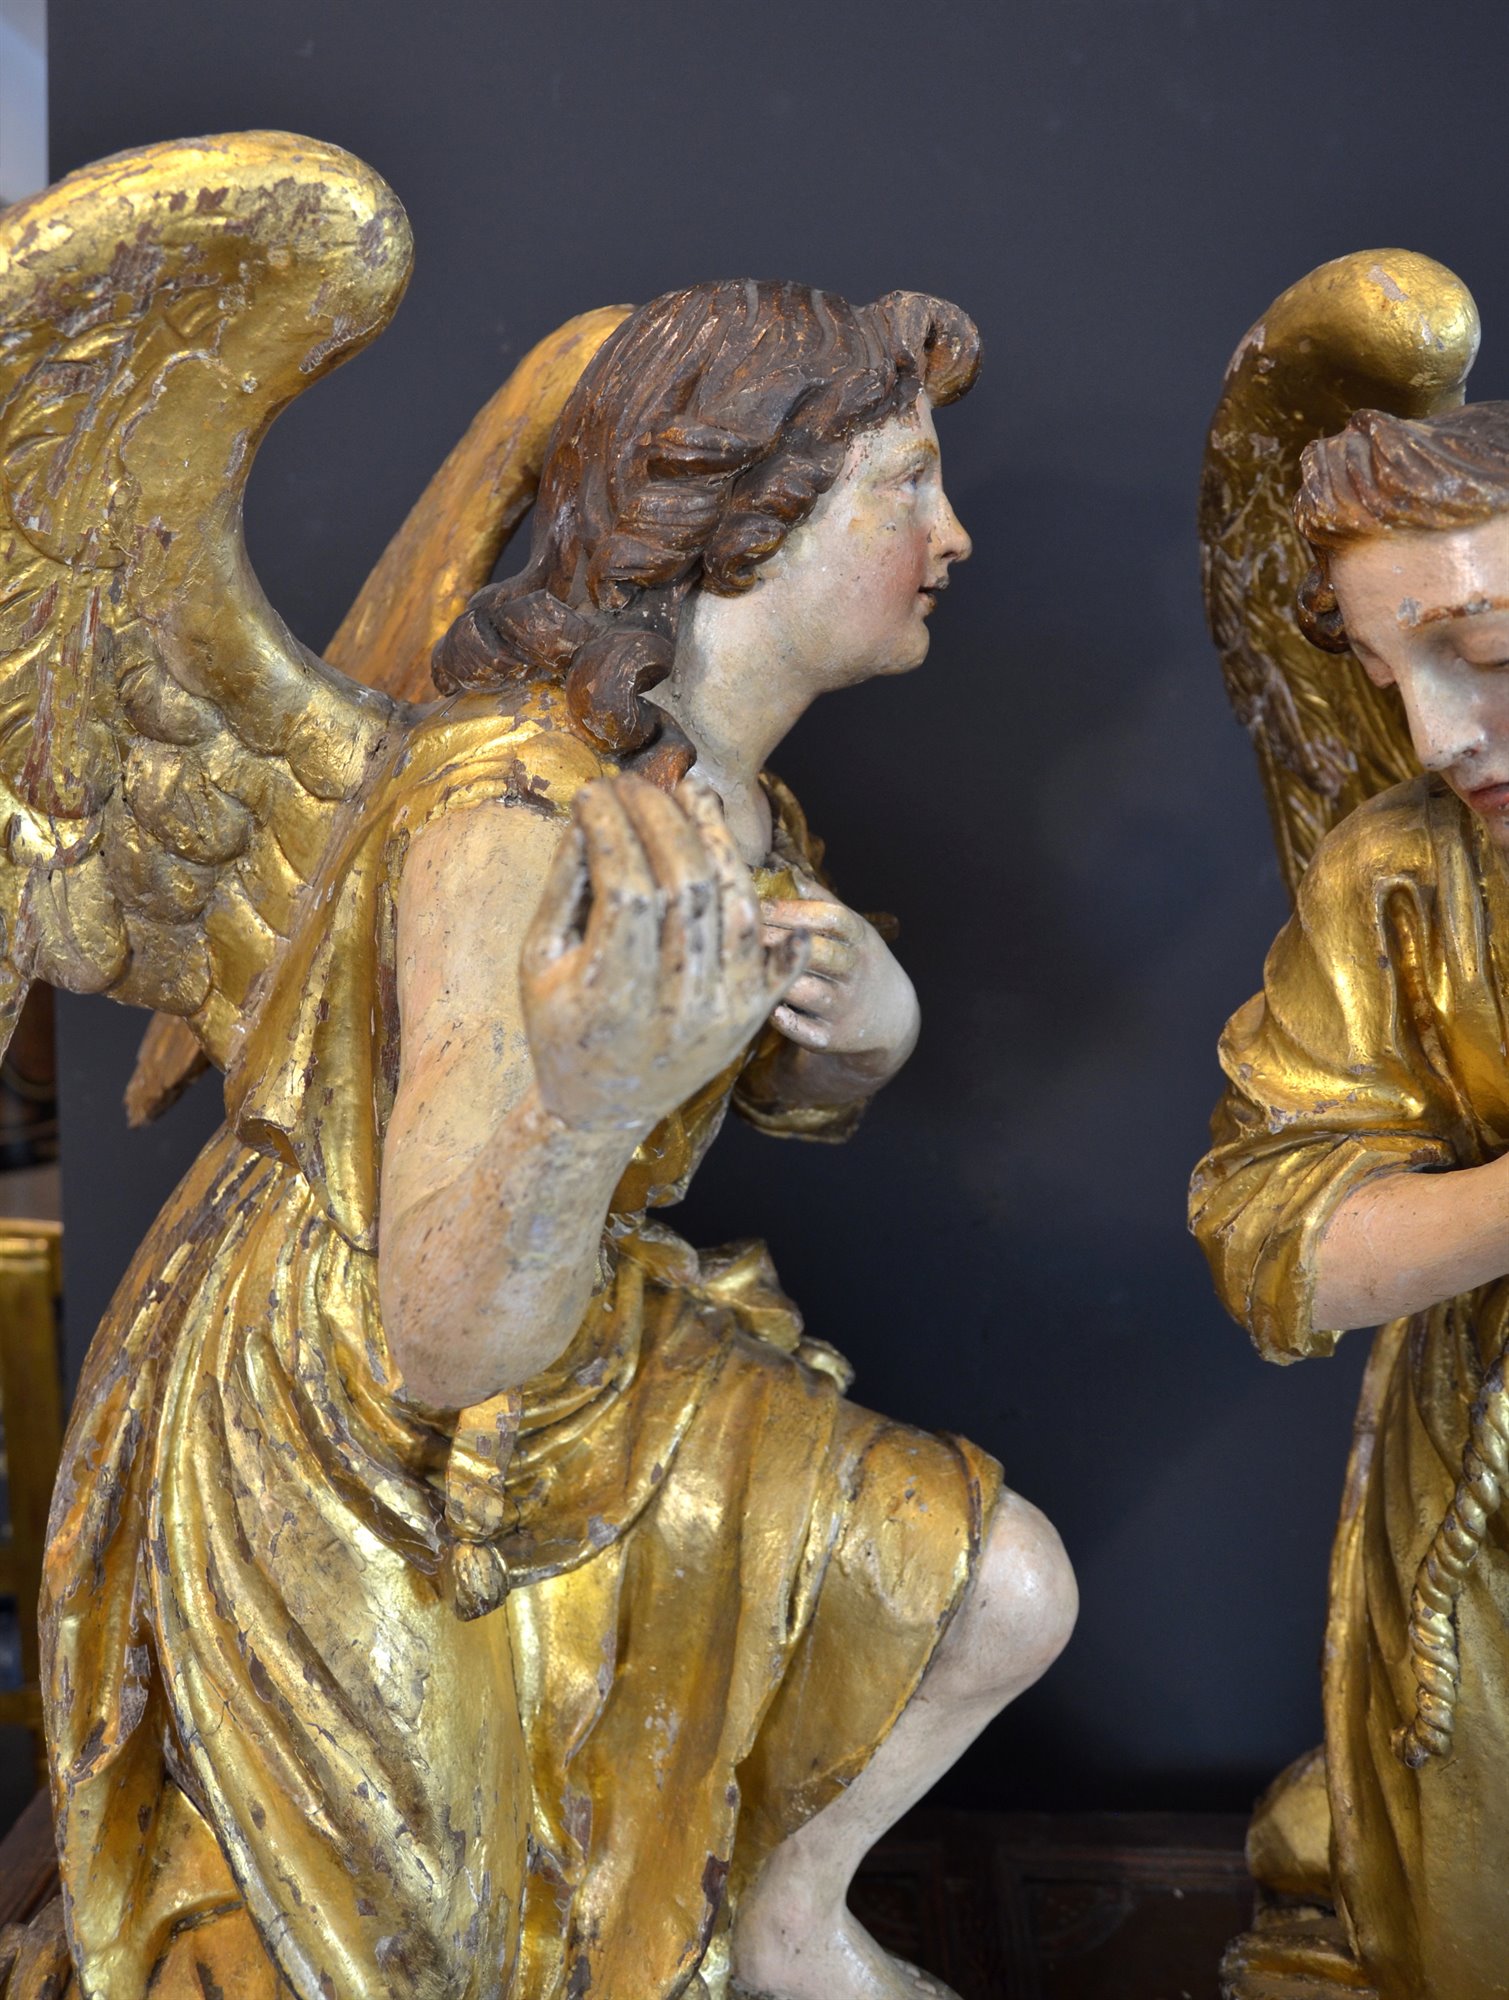 Spettacolari angeli alati in legno policromo e dorato